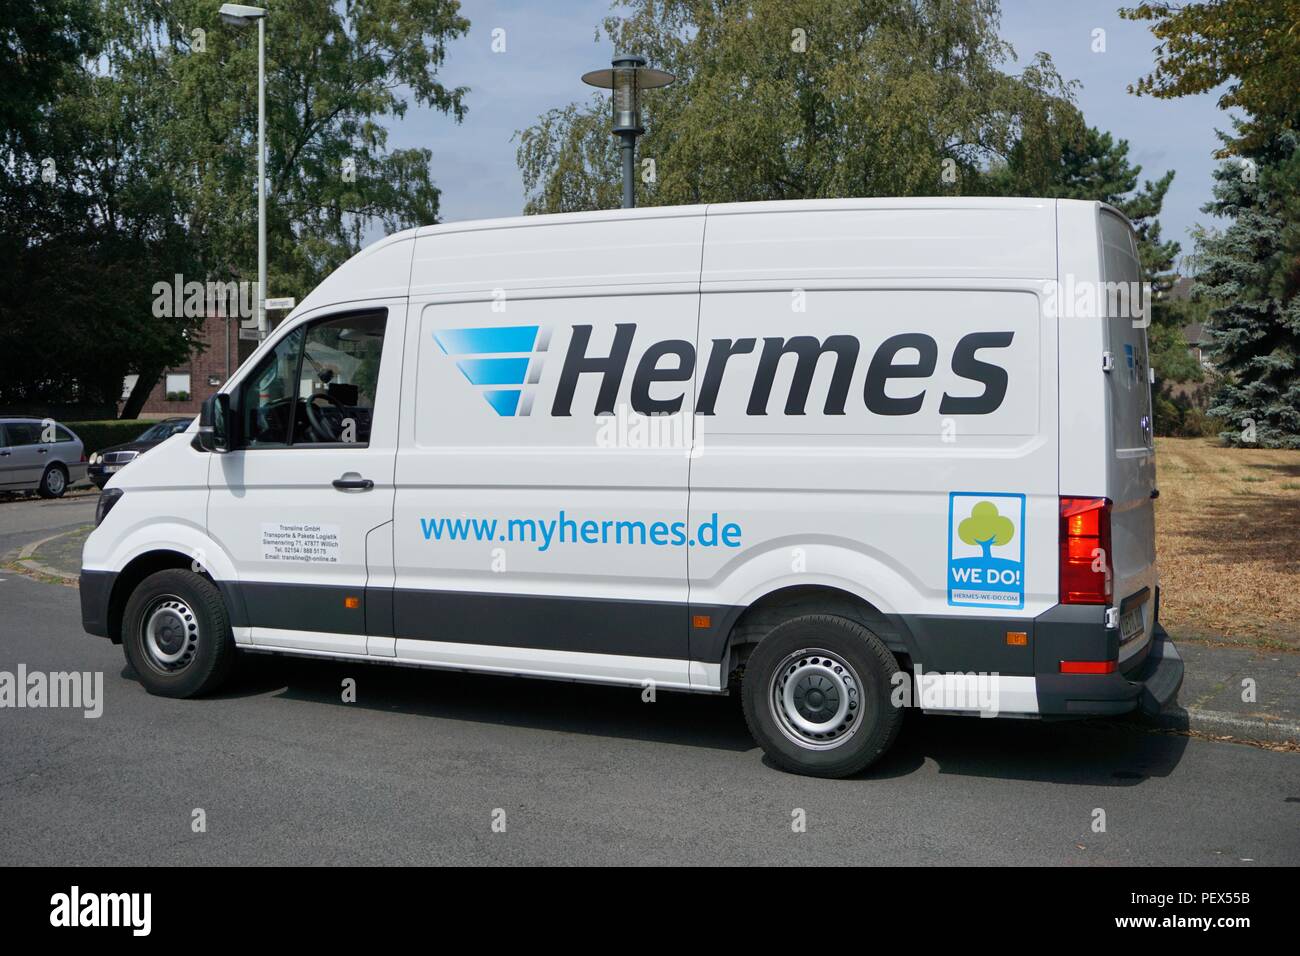 my hermes van